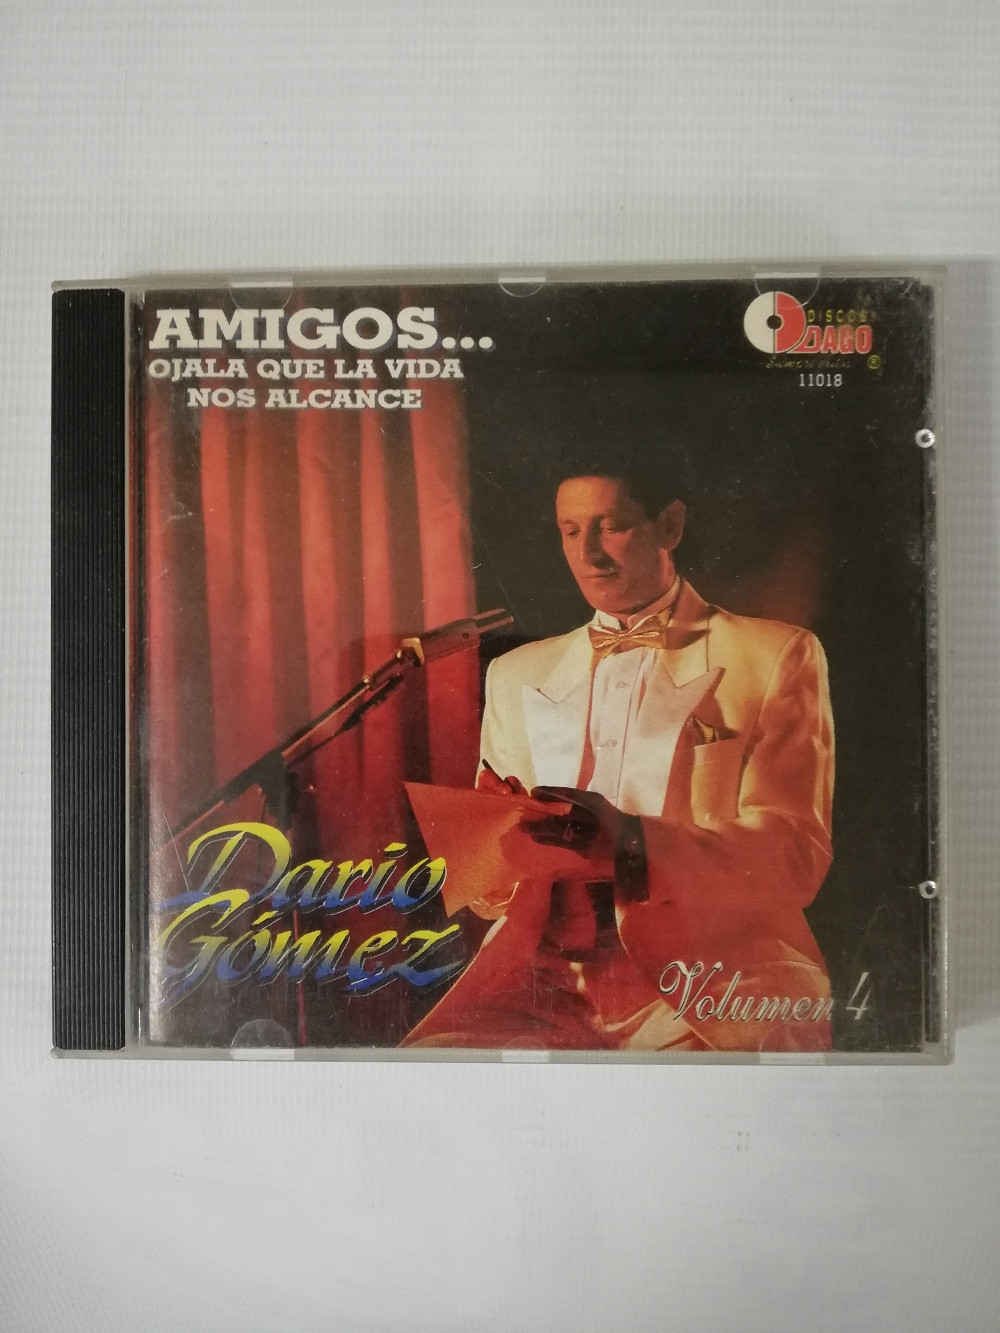 Imagen CD DARIO GOMEZ - AMIGOS...OJALA QUE LA VIDA NOS ALCANCE VOL. 4 1